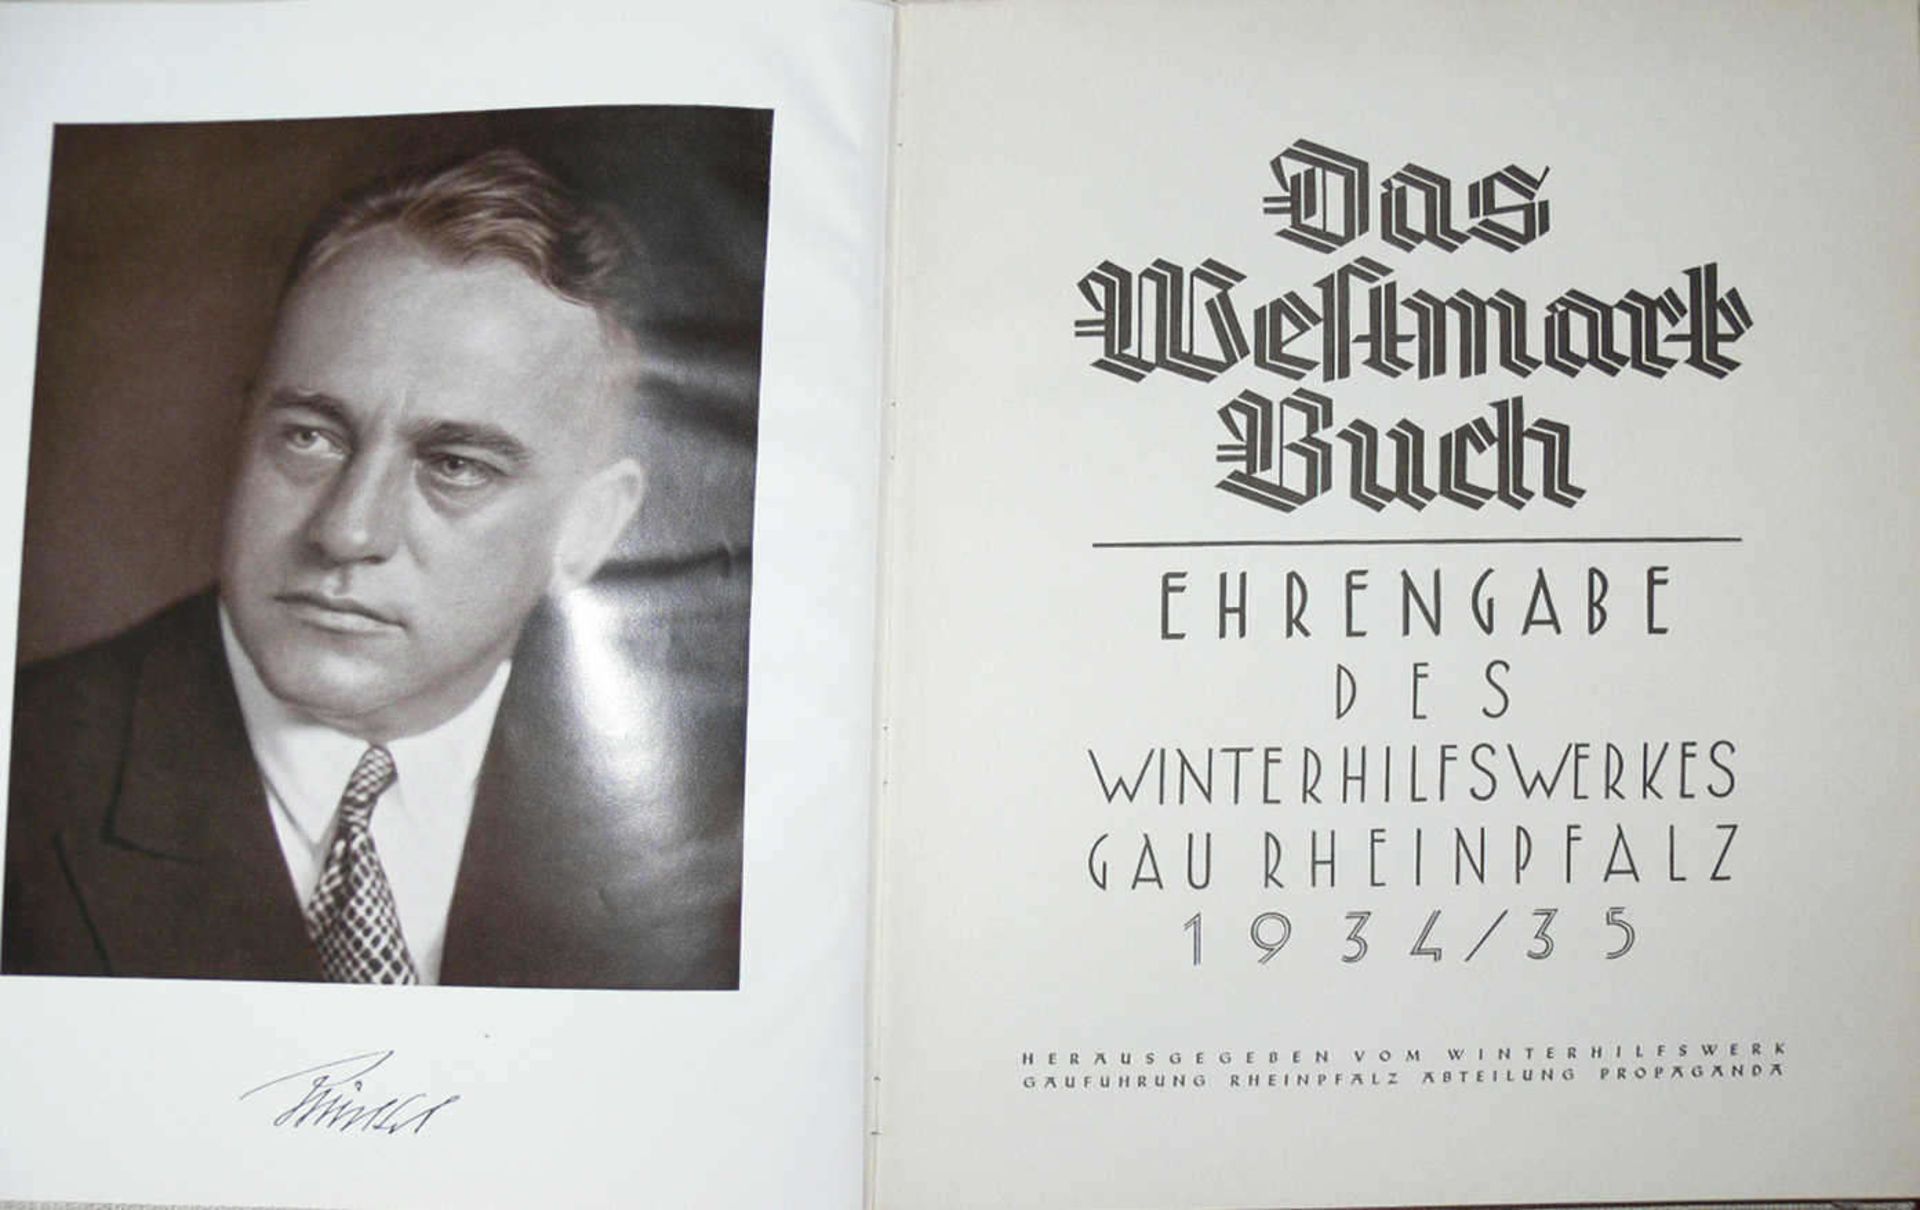 Das Westmarkbuch - Ehrenausgabe des Winterhilfswerkes Gau Rheinpfalz 1934/35. Zusätzlich Zeitung "